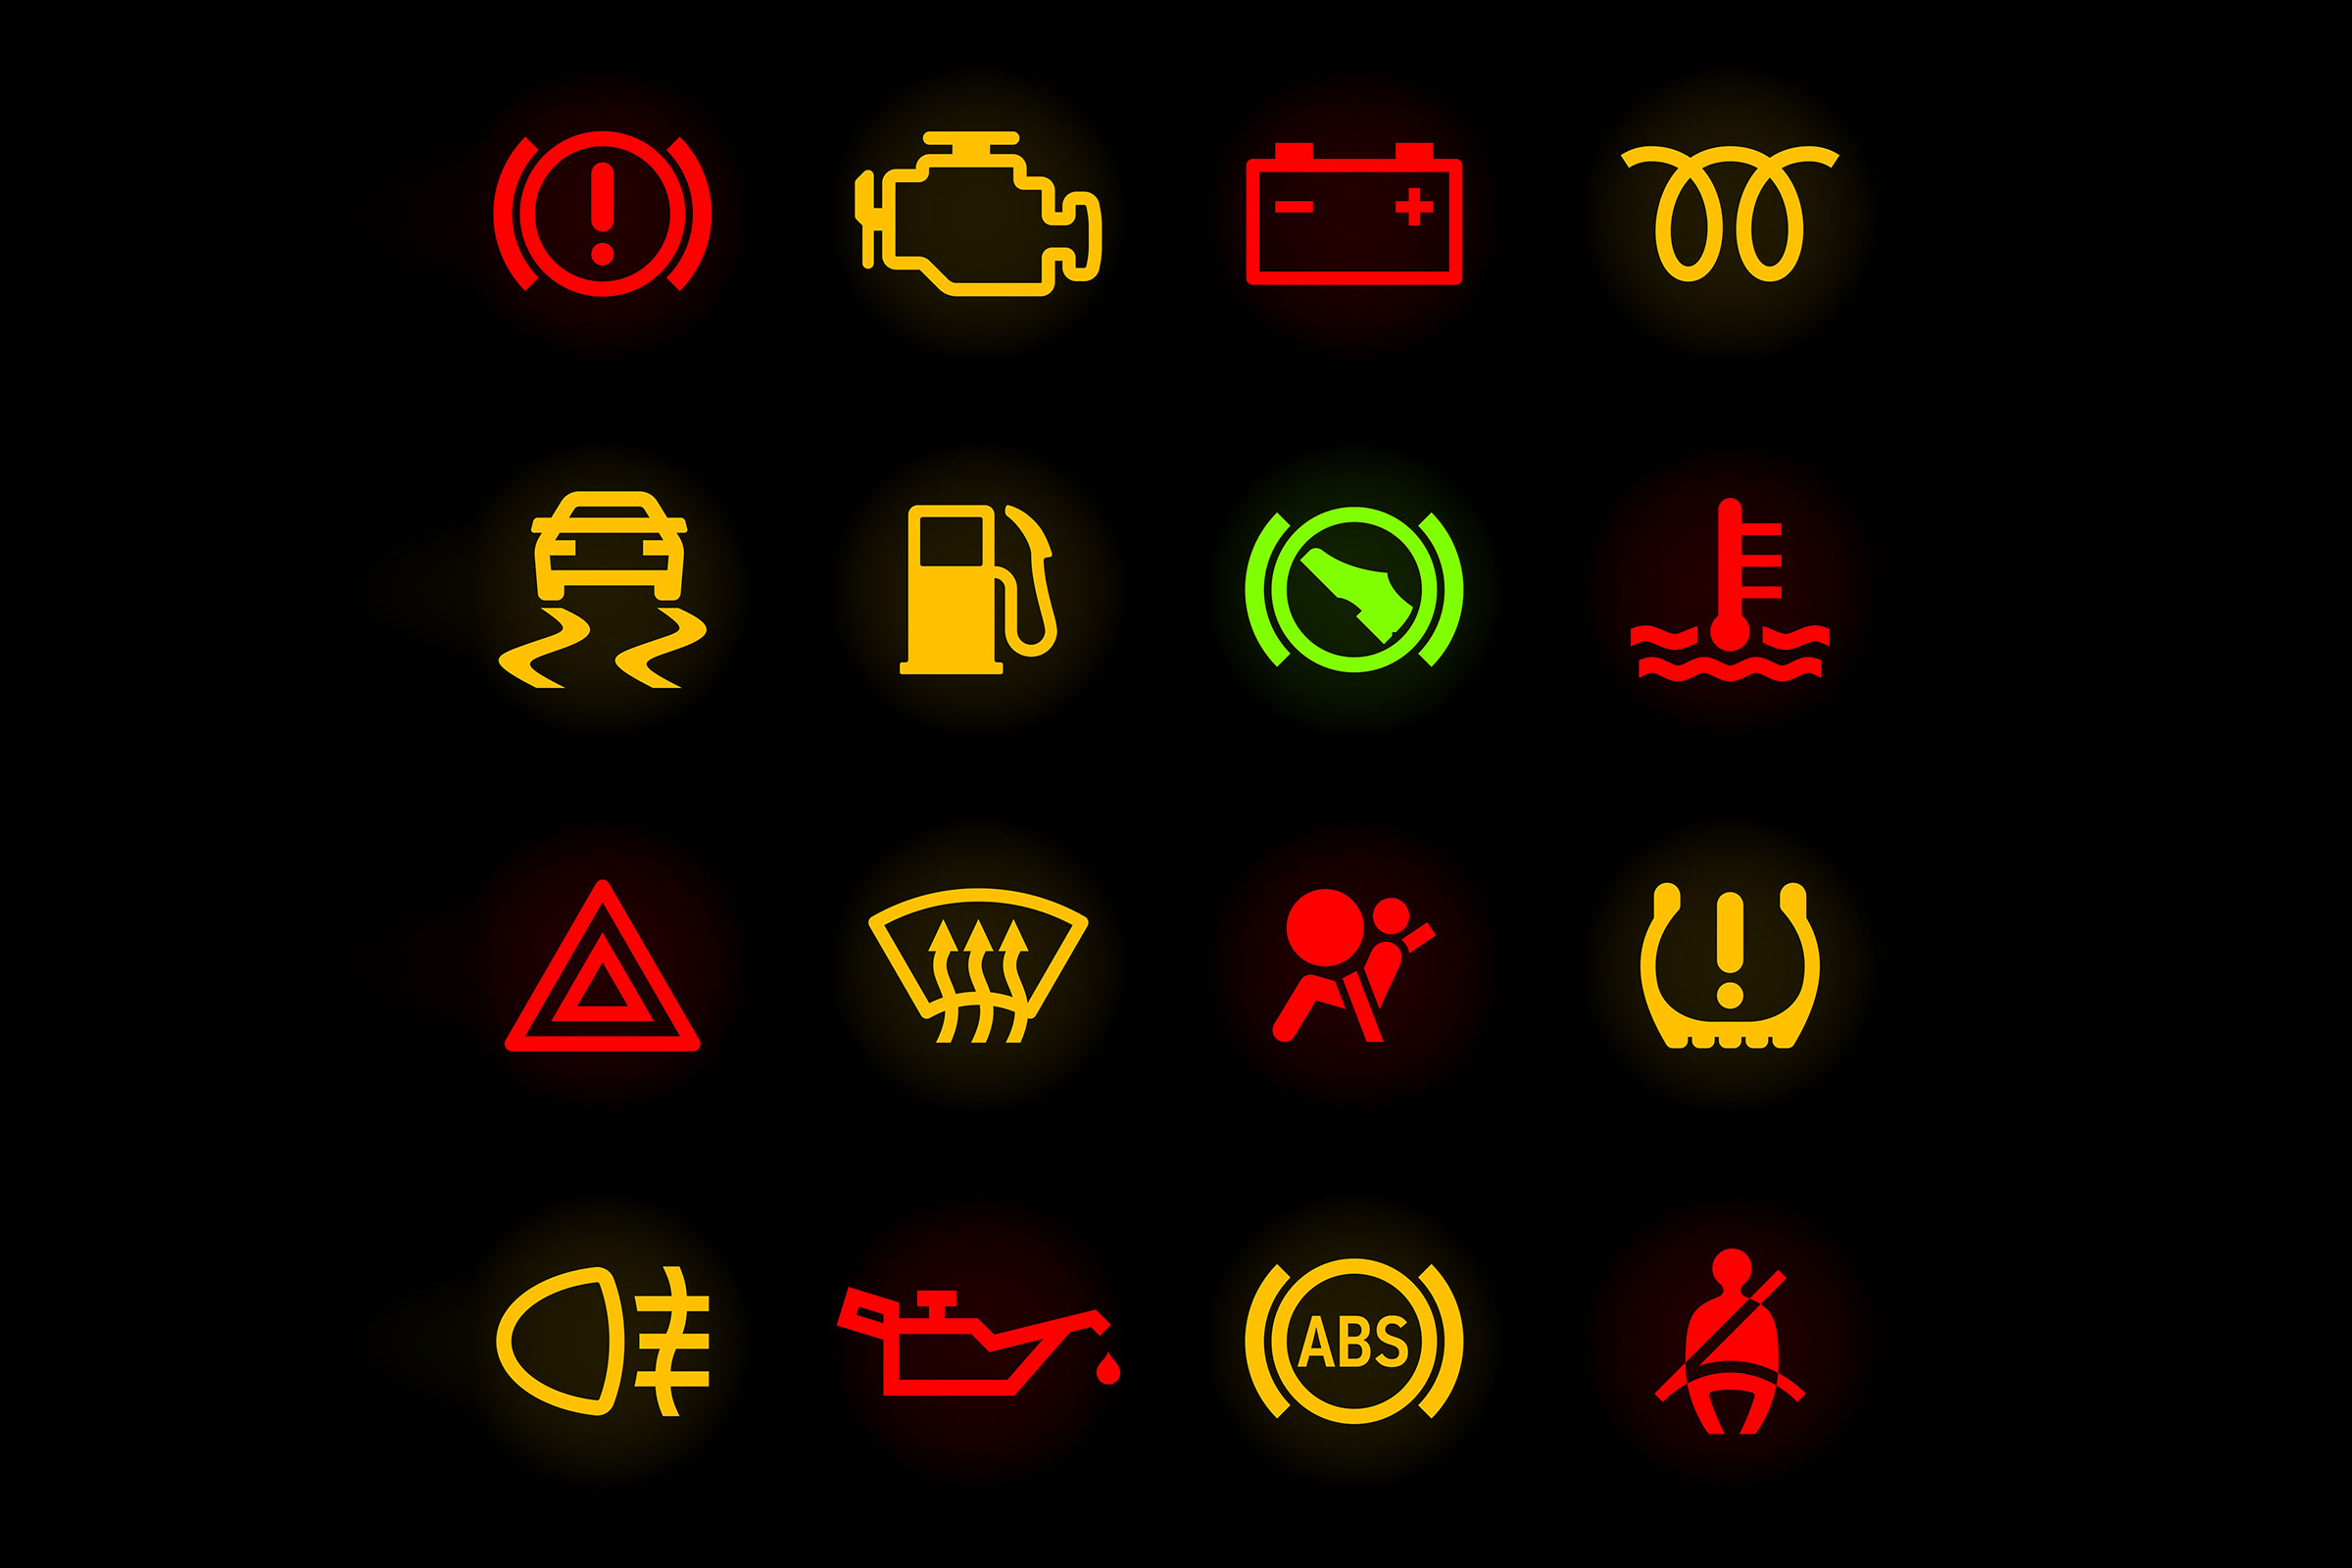 bmw dashboard symbols